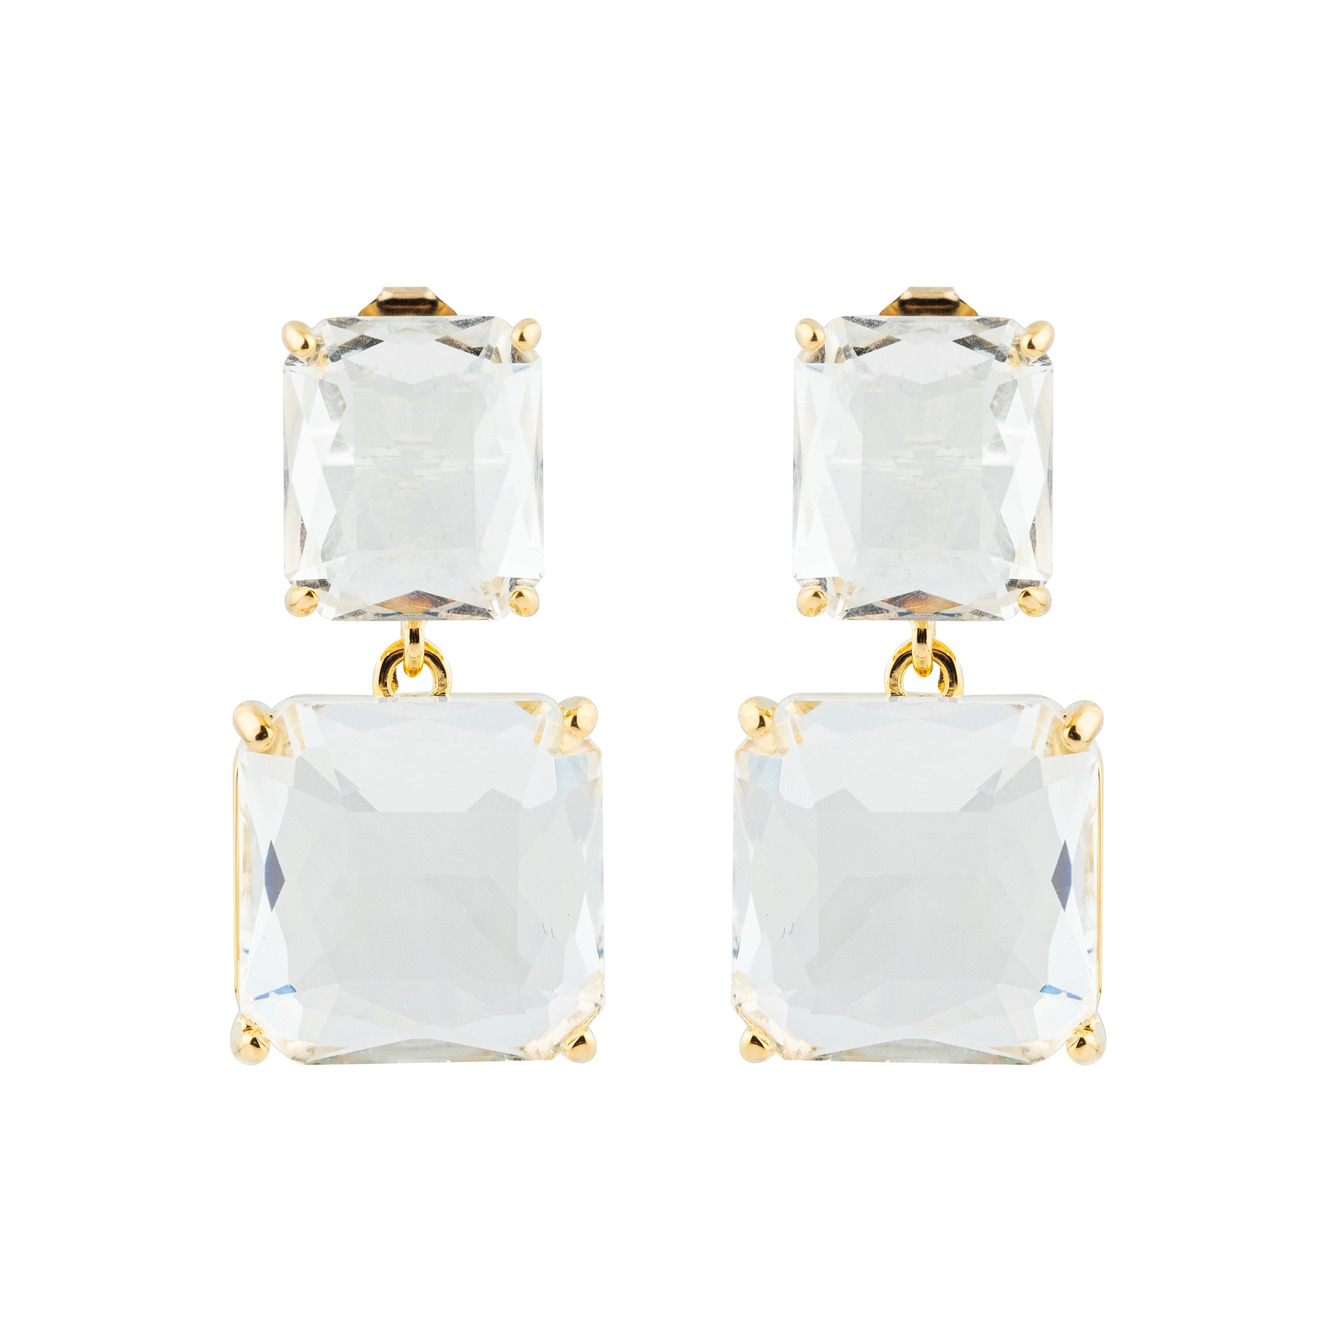 Herald Percy Двойные золотистые серьги с белыми кристаллами herald percy золотистые серьги стрелки с кристаллами